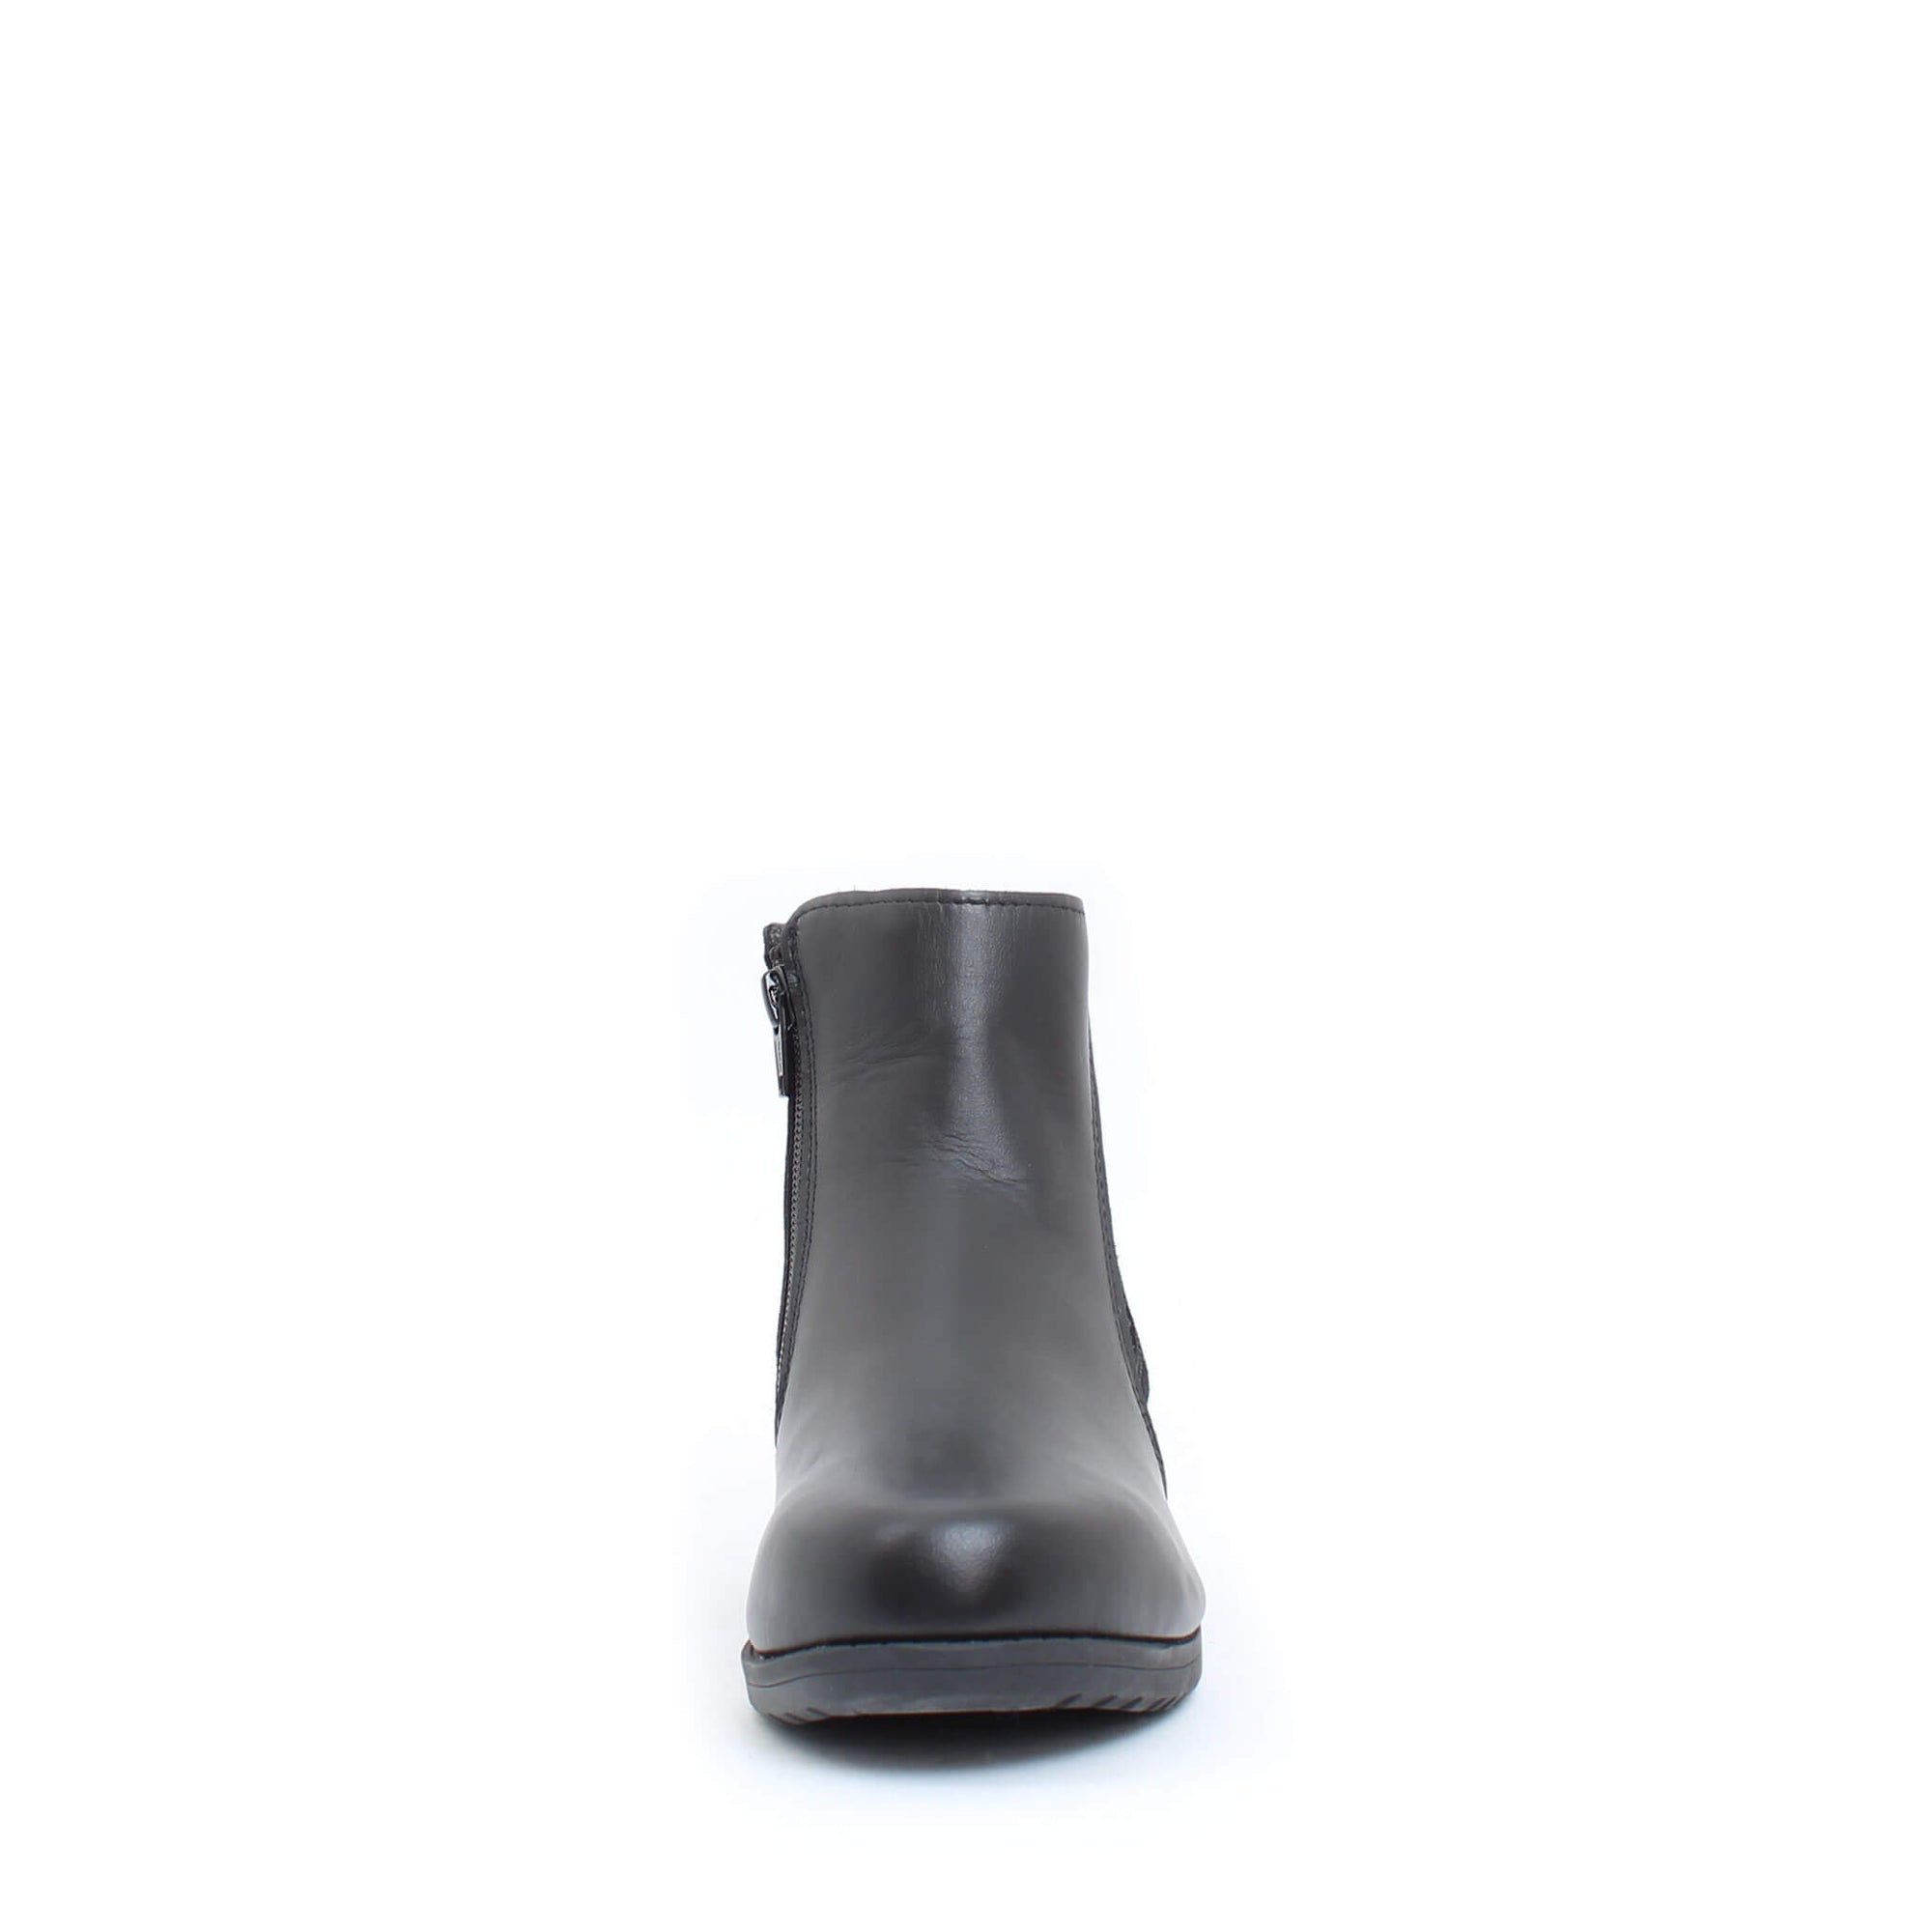 Misty winter boot for women - Black 